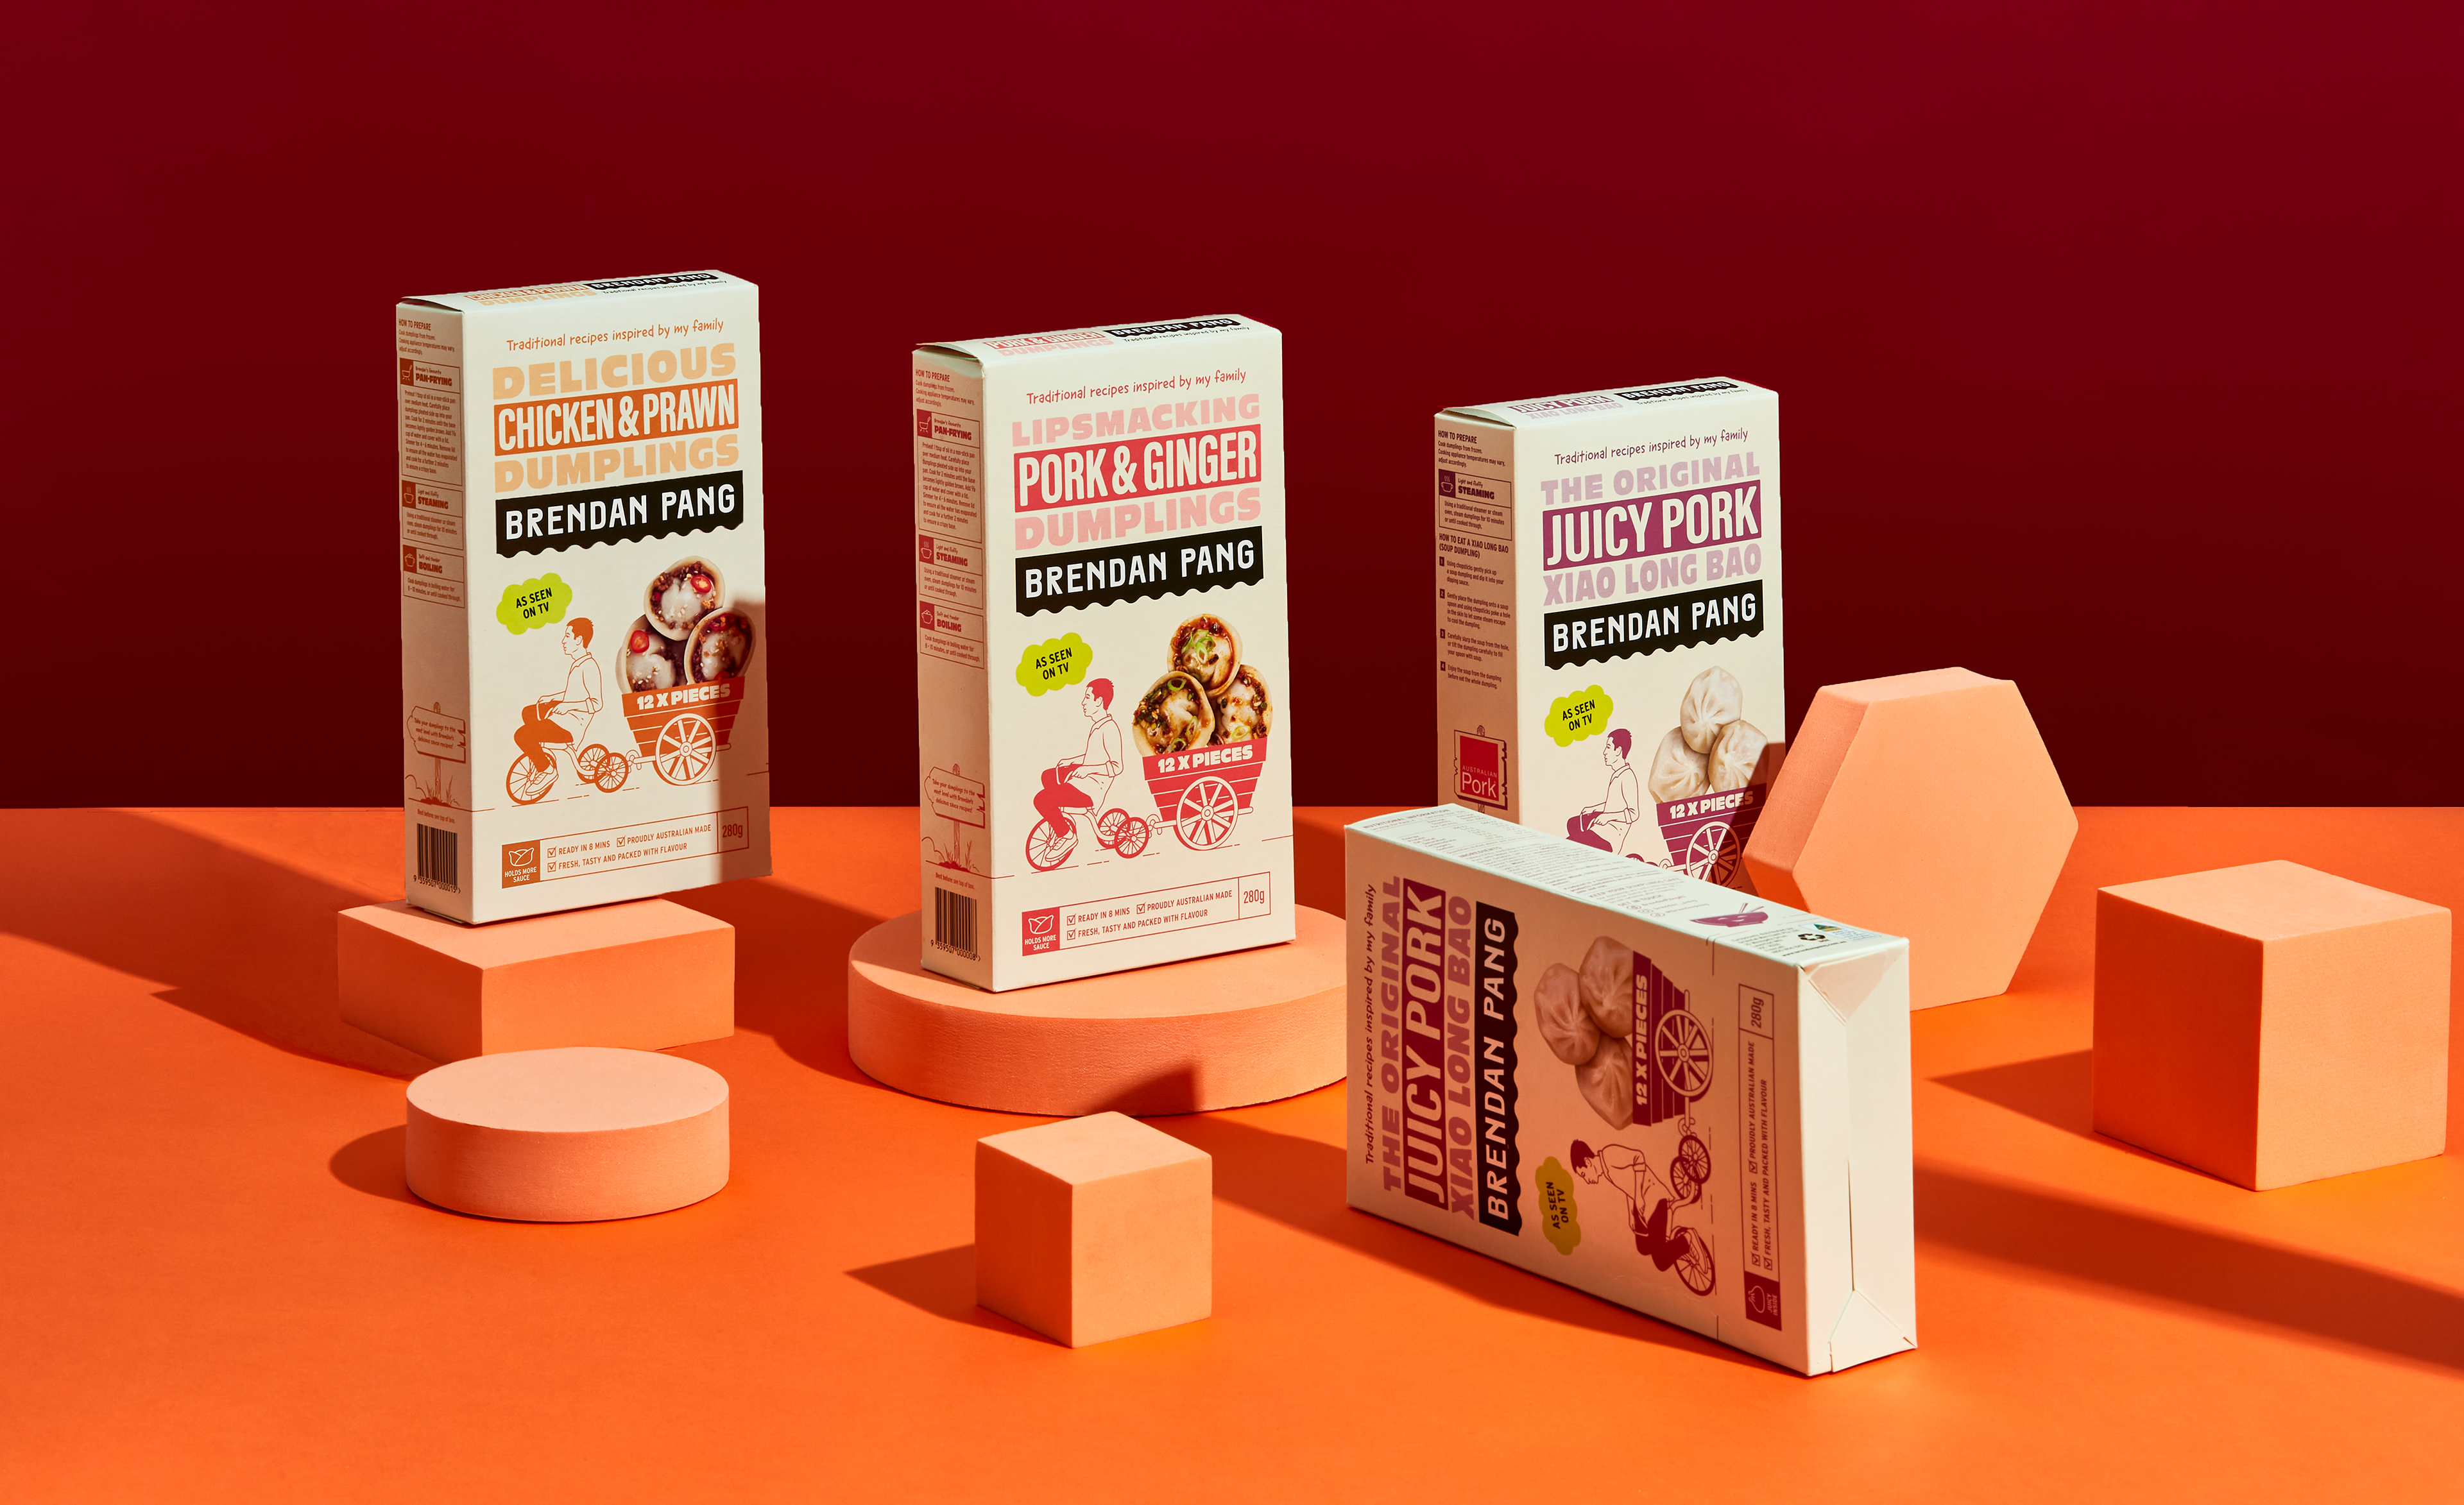 Range of dumpling packaging design for Brendan Pang’s dumpling brand designed by consumer brand company Our Revolution